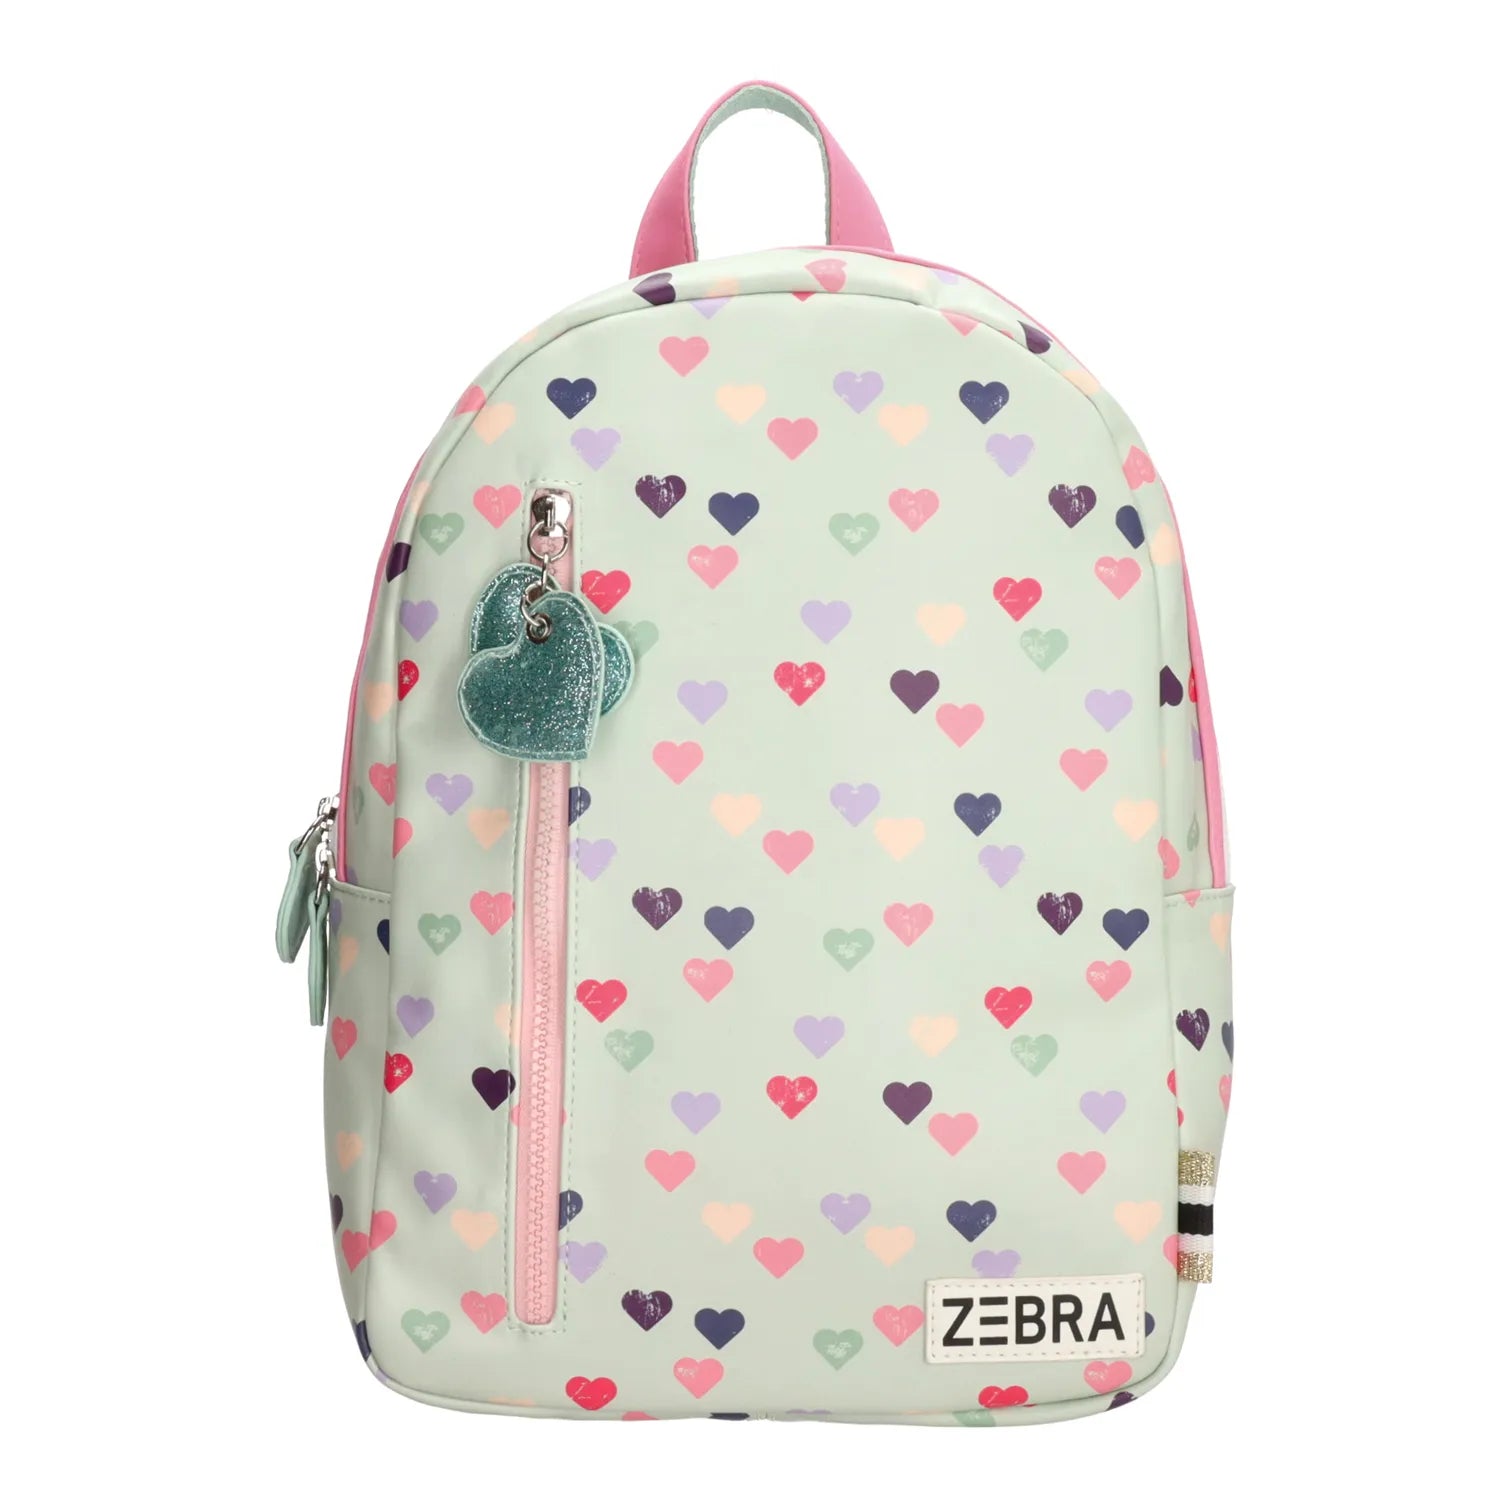 Zebra Backpack (M) - Girls Hearts - Mint